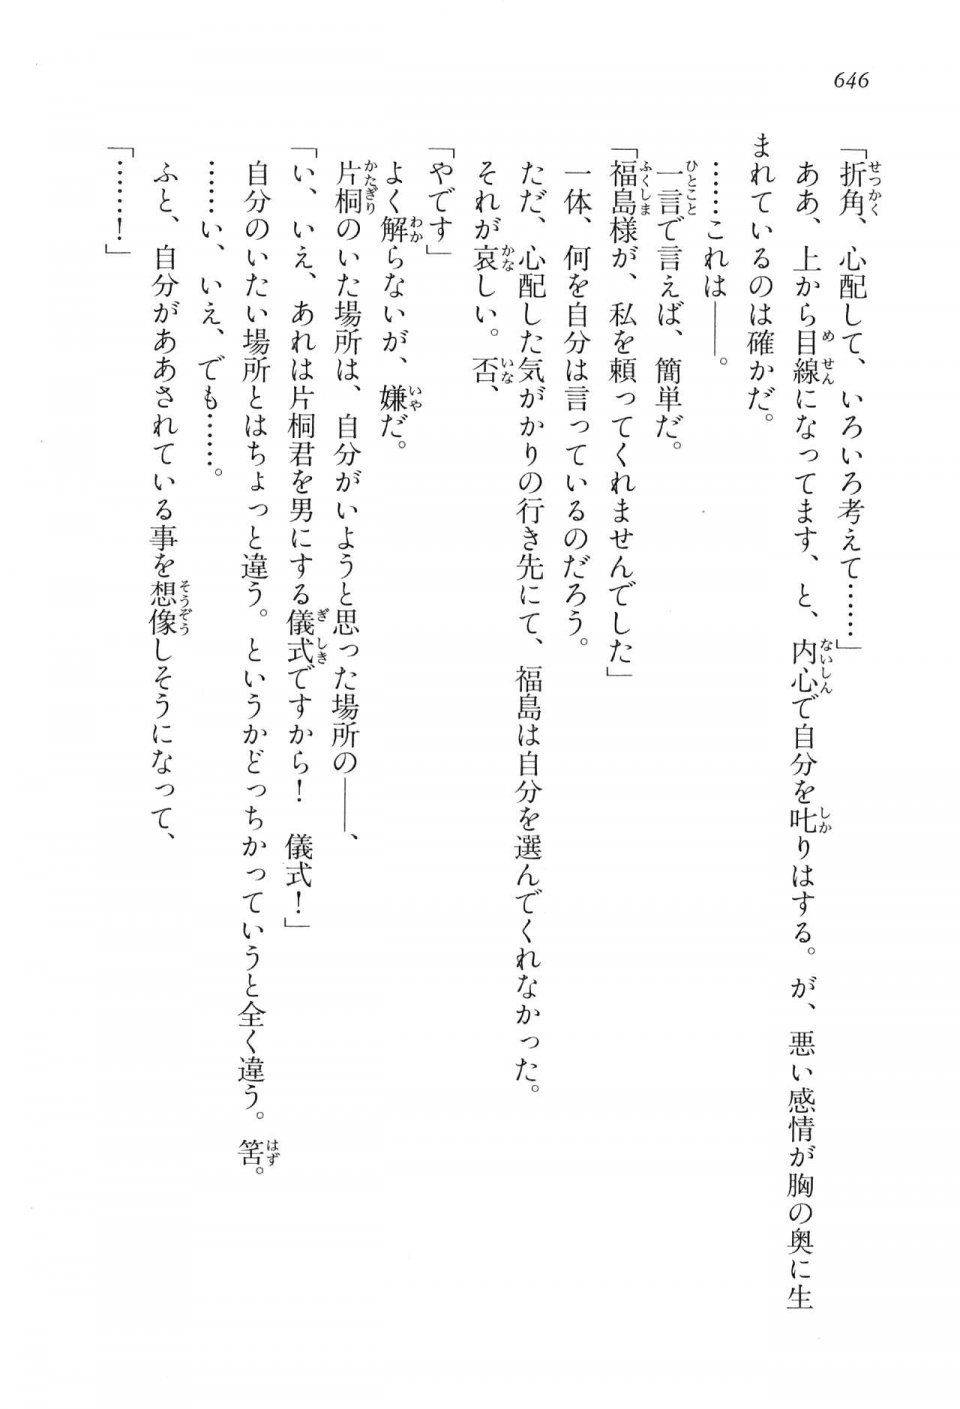 Kyoukai Senjou no Horizon LN Vol 16(7A) - Photo #646